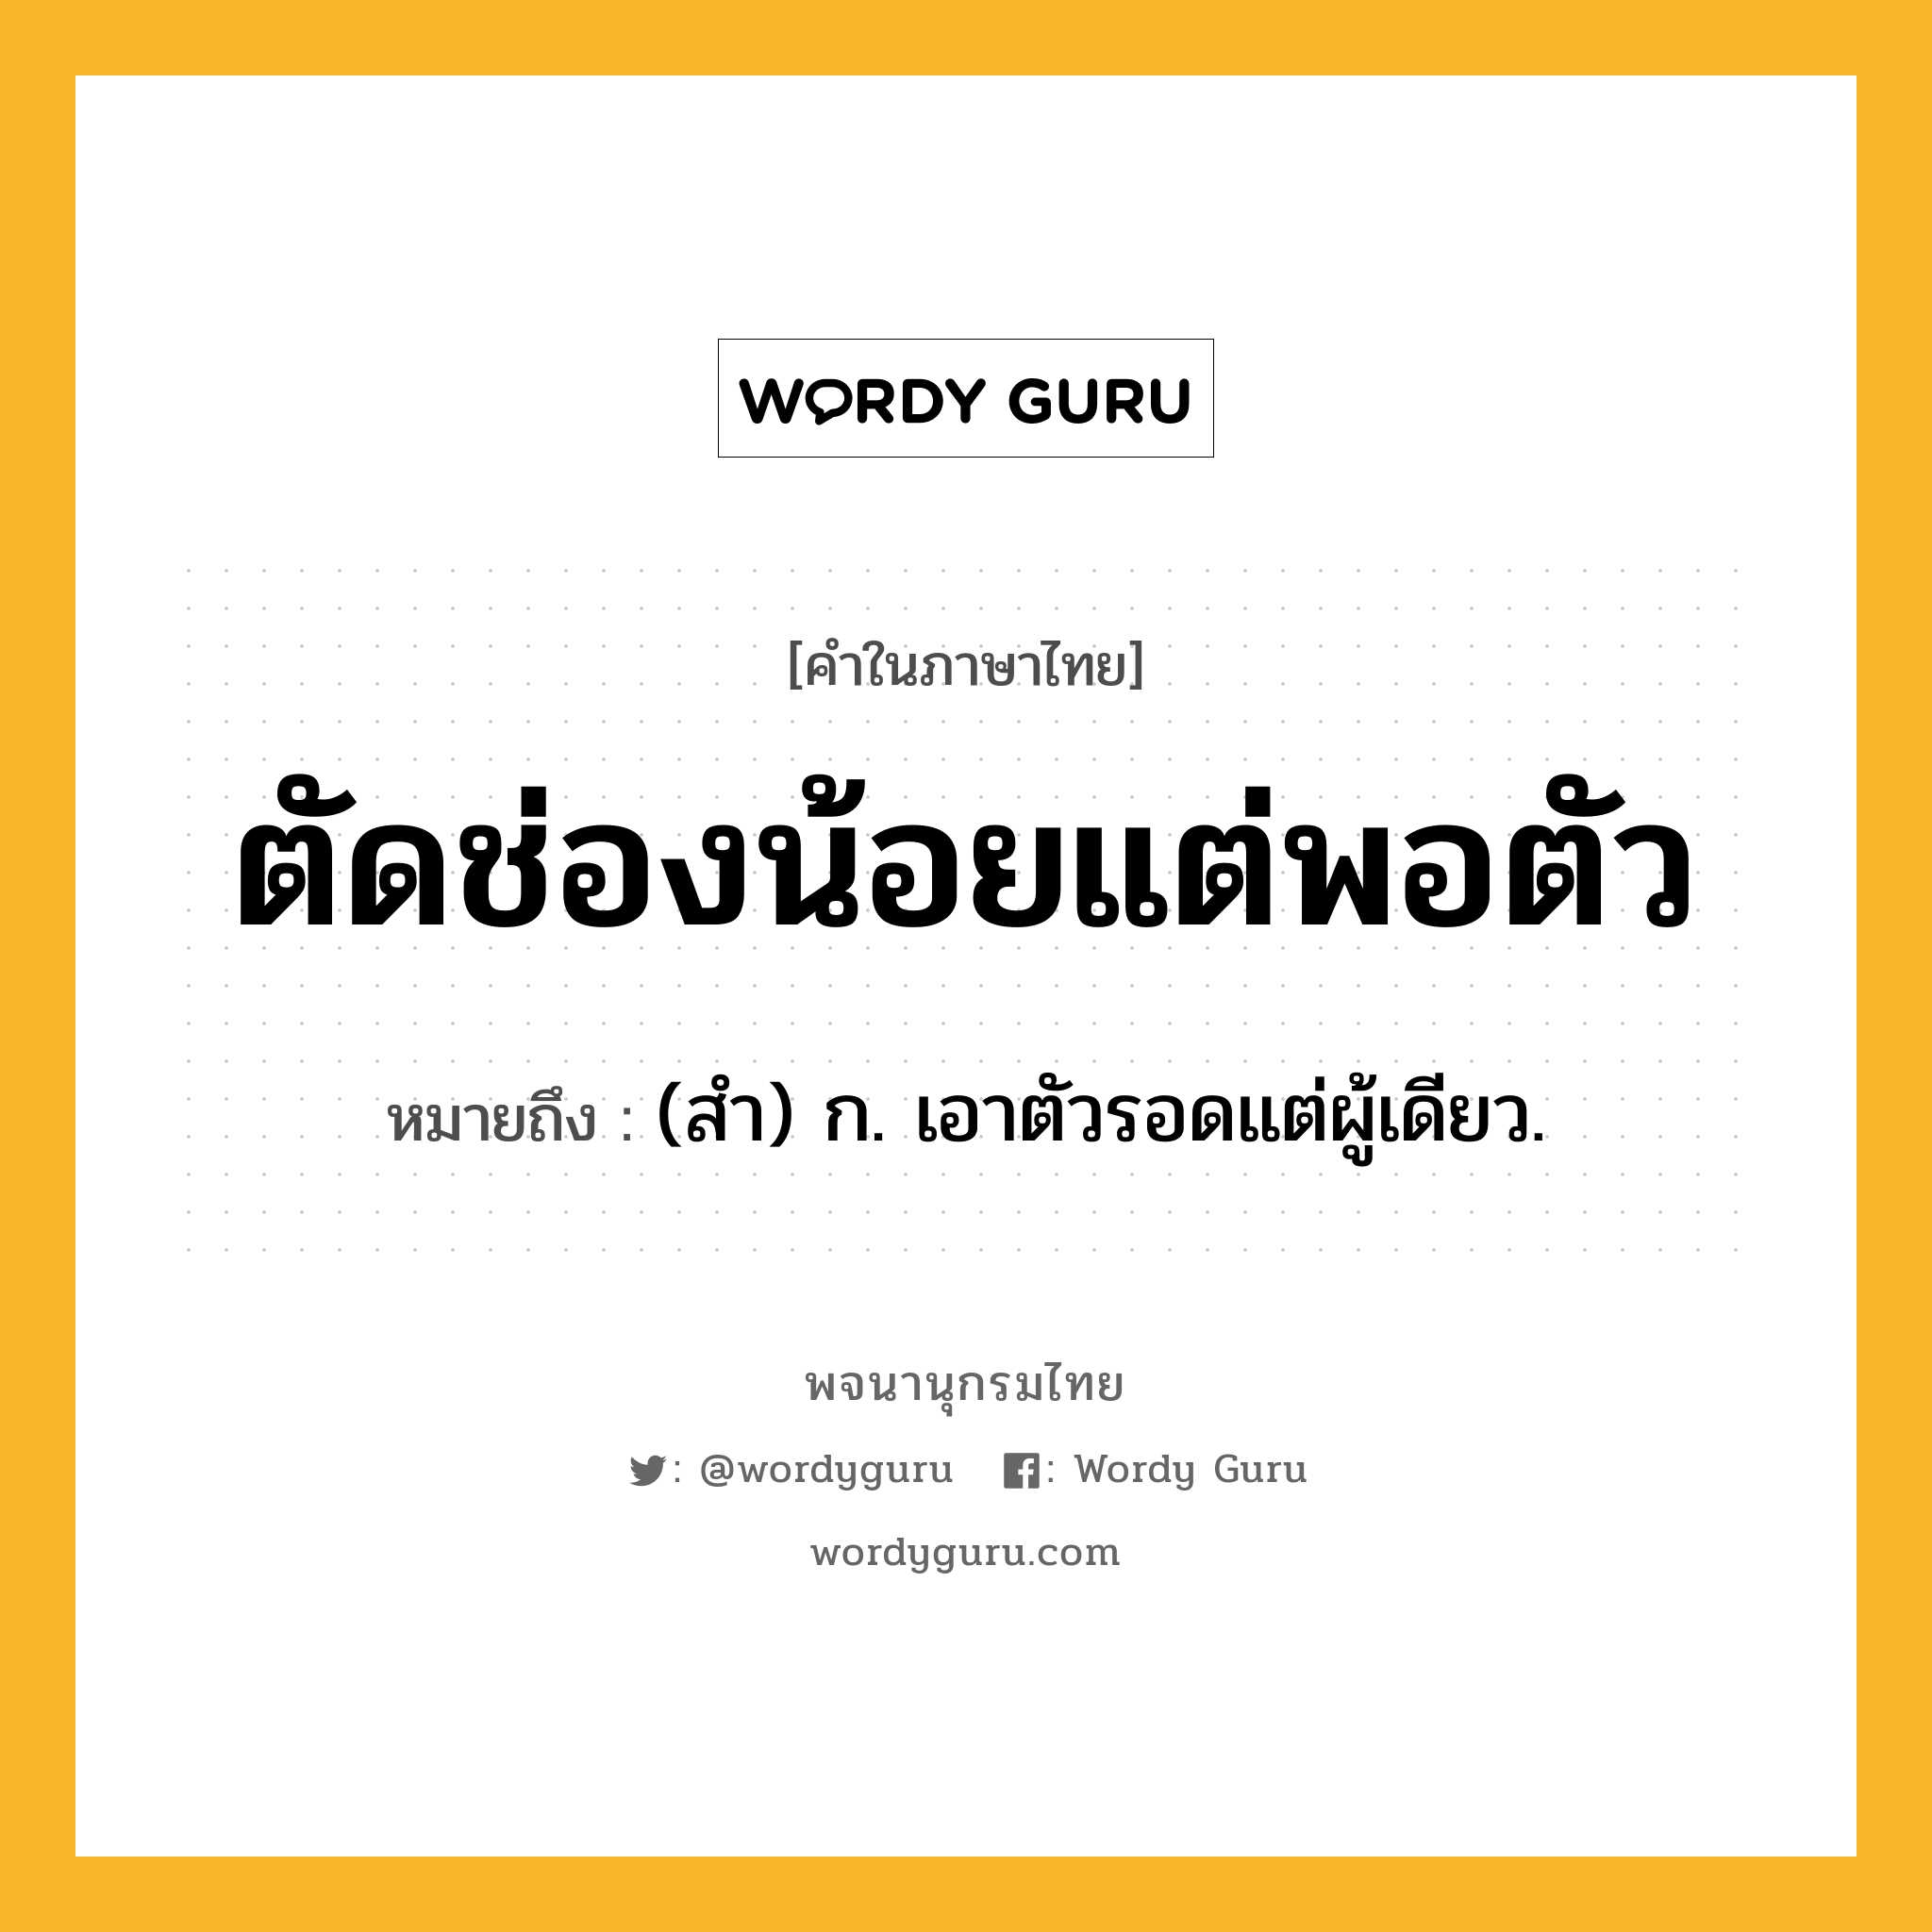 ตัดช่องน้อยแต่พอตัว ความหมาย หมายถึงอะไร?, คำในภาษาไทย ตัดช่องน้อยแต่พอตัว หมายถึง (สํา) ก. เอาตัวรอดแต่ผู้เดียว.